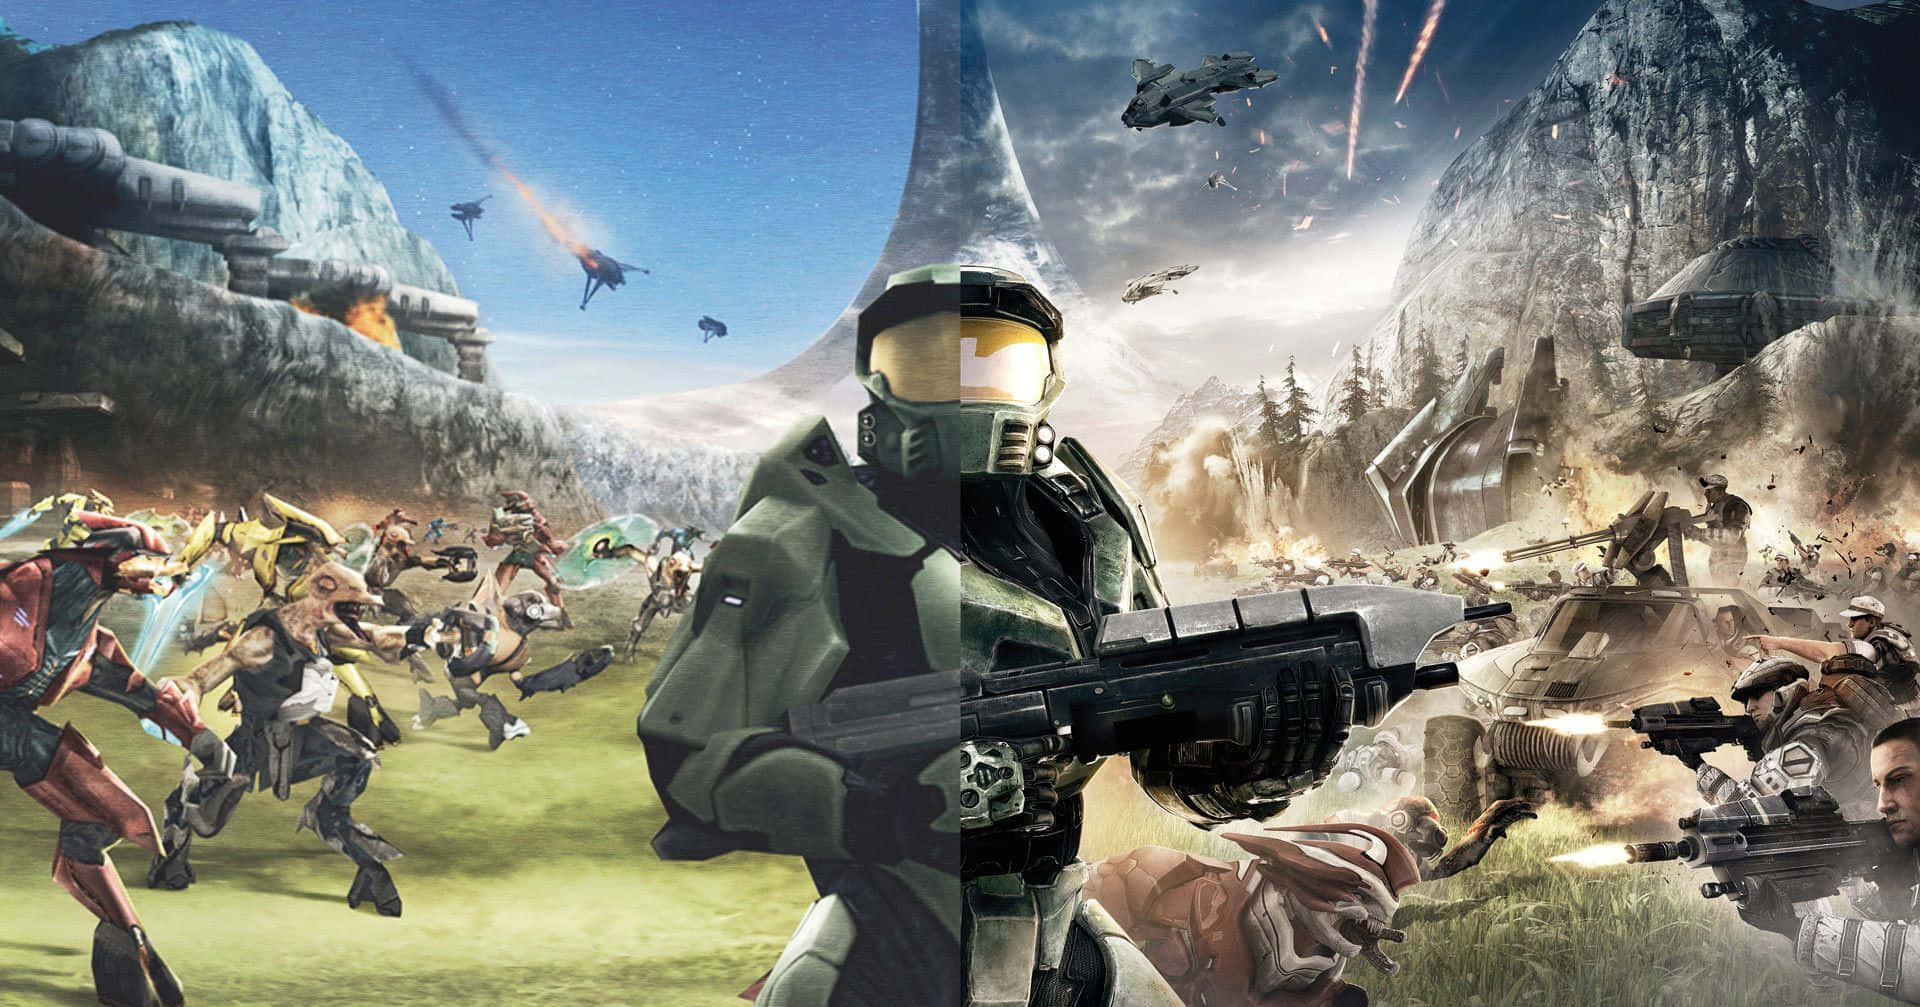 Intense Battle Scene from Halo Universe Wallpaper